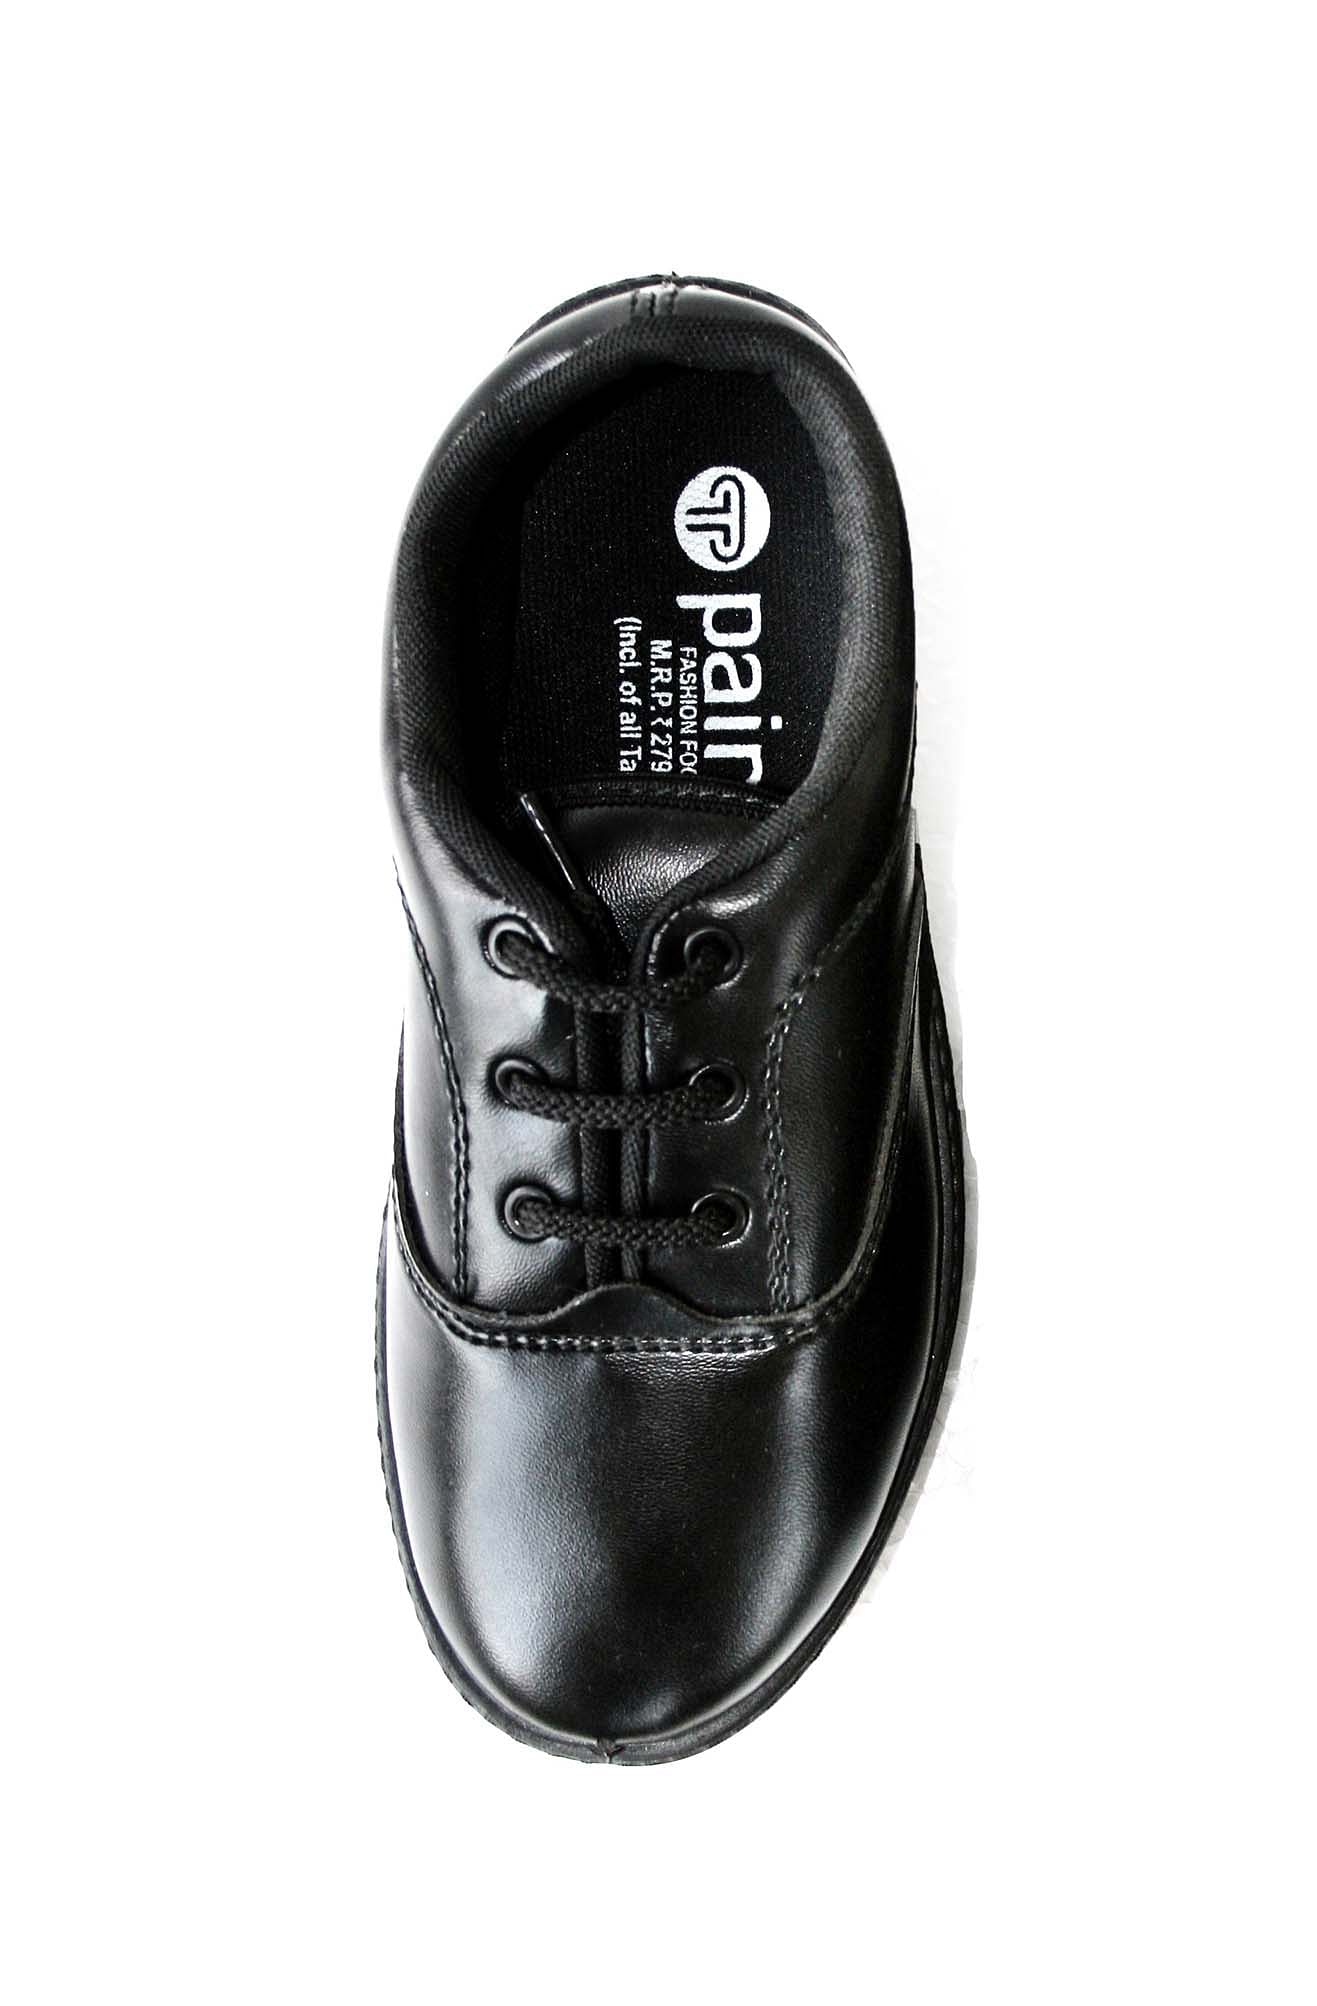 Pair-it Boys PVC School Shoe - Size-1,2,3 - Color Black